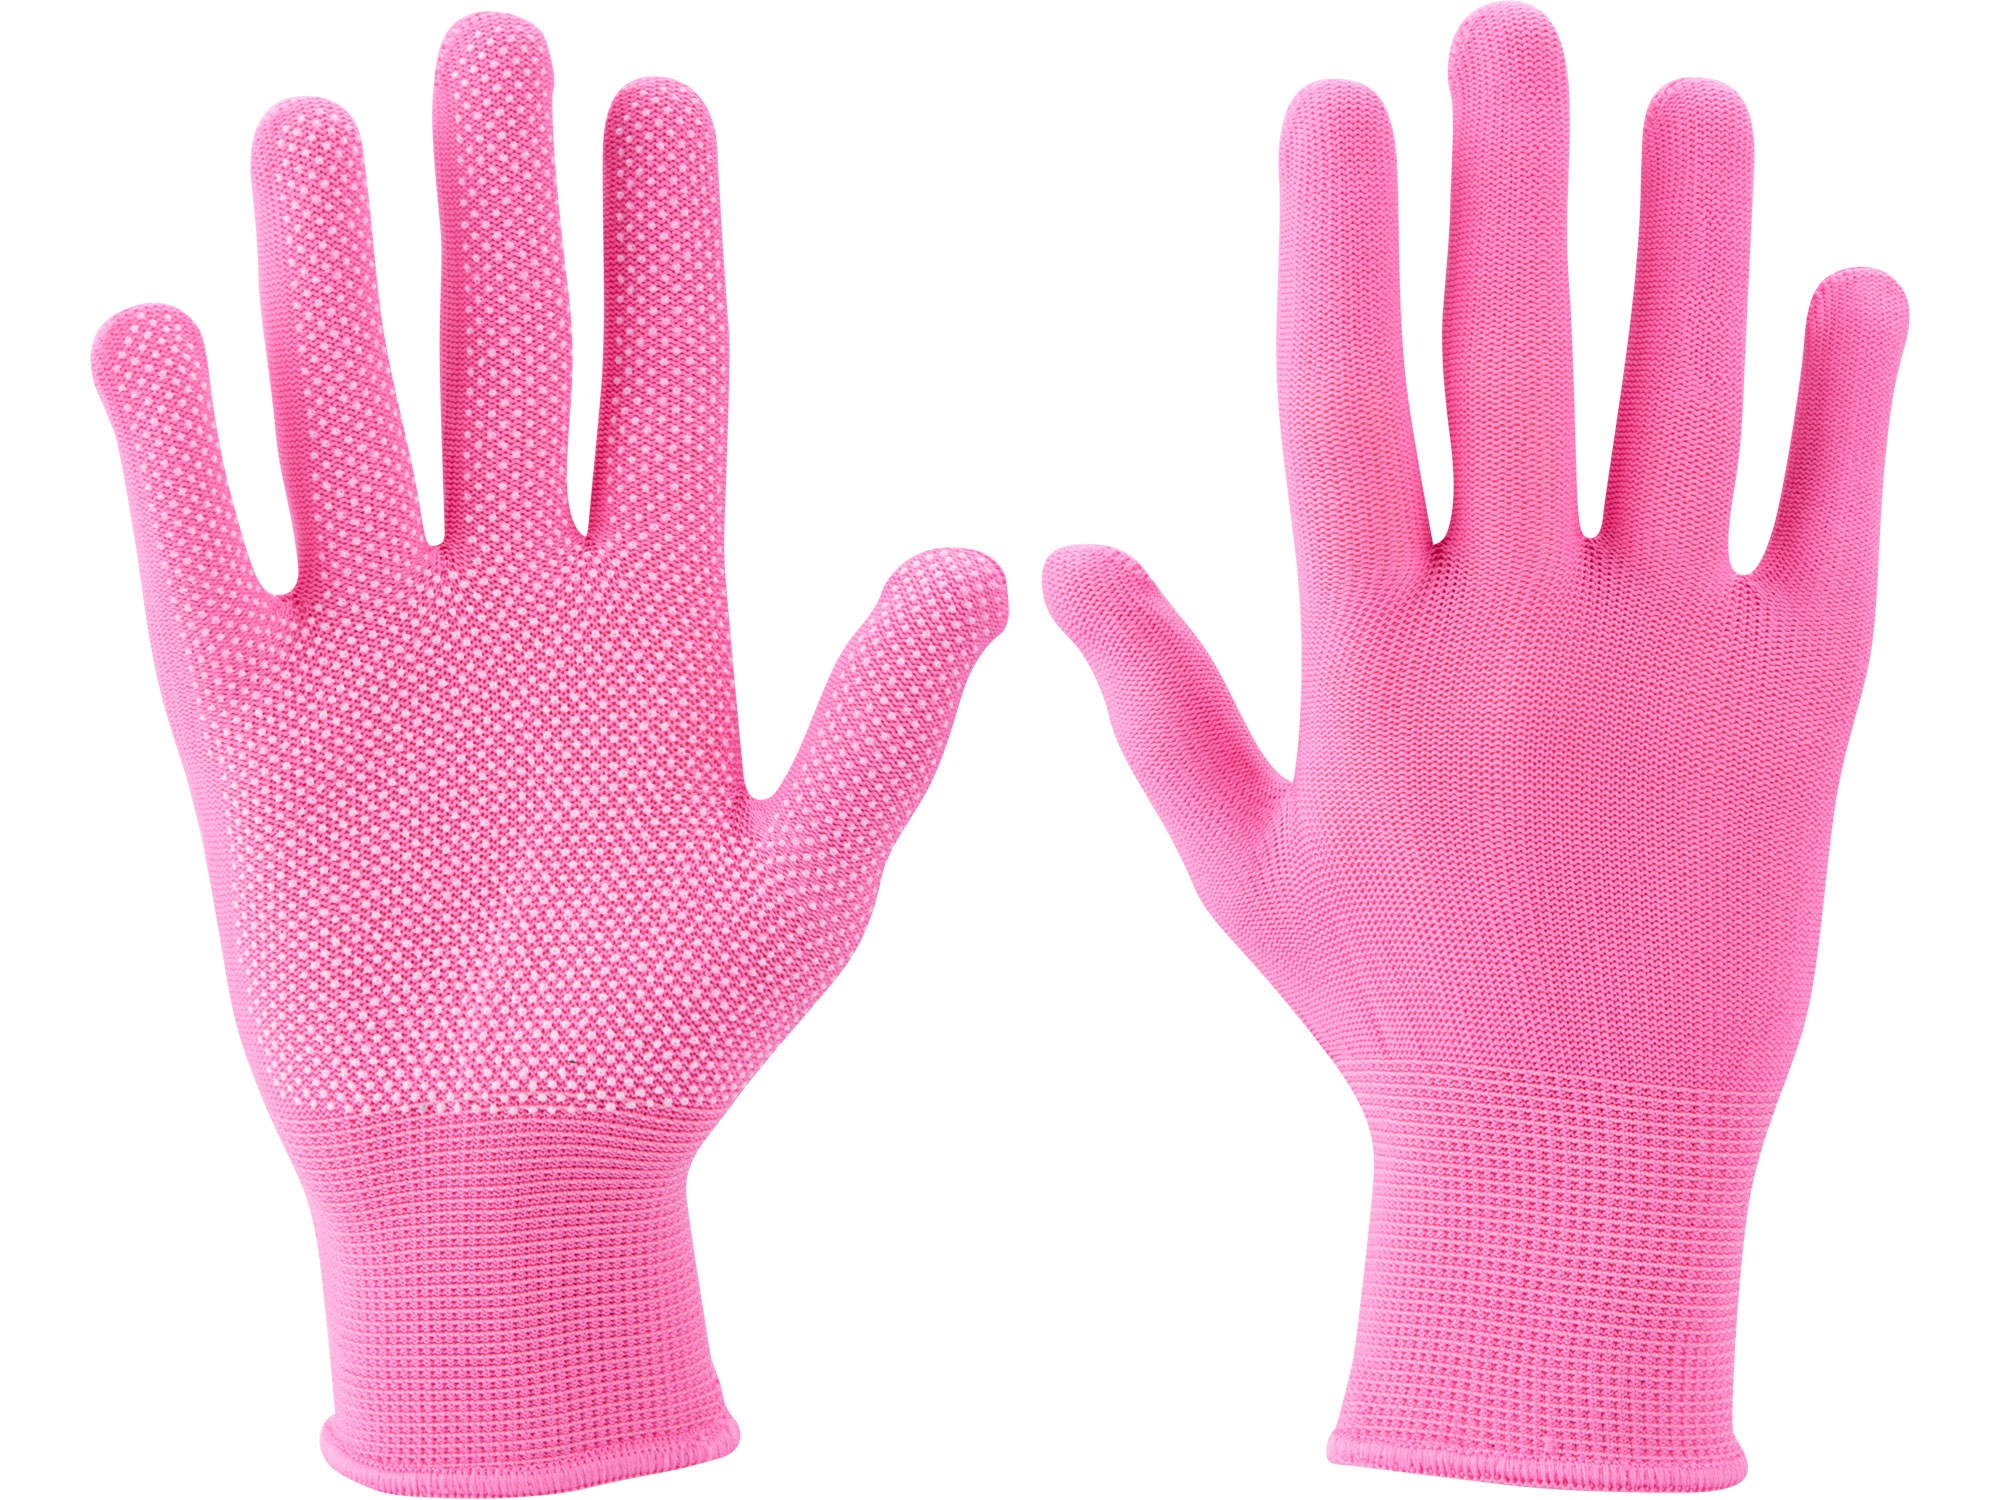 rukavice z polyesteru s PVC terčíky na dlani, velikost 7", EXTOL LADY 99719